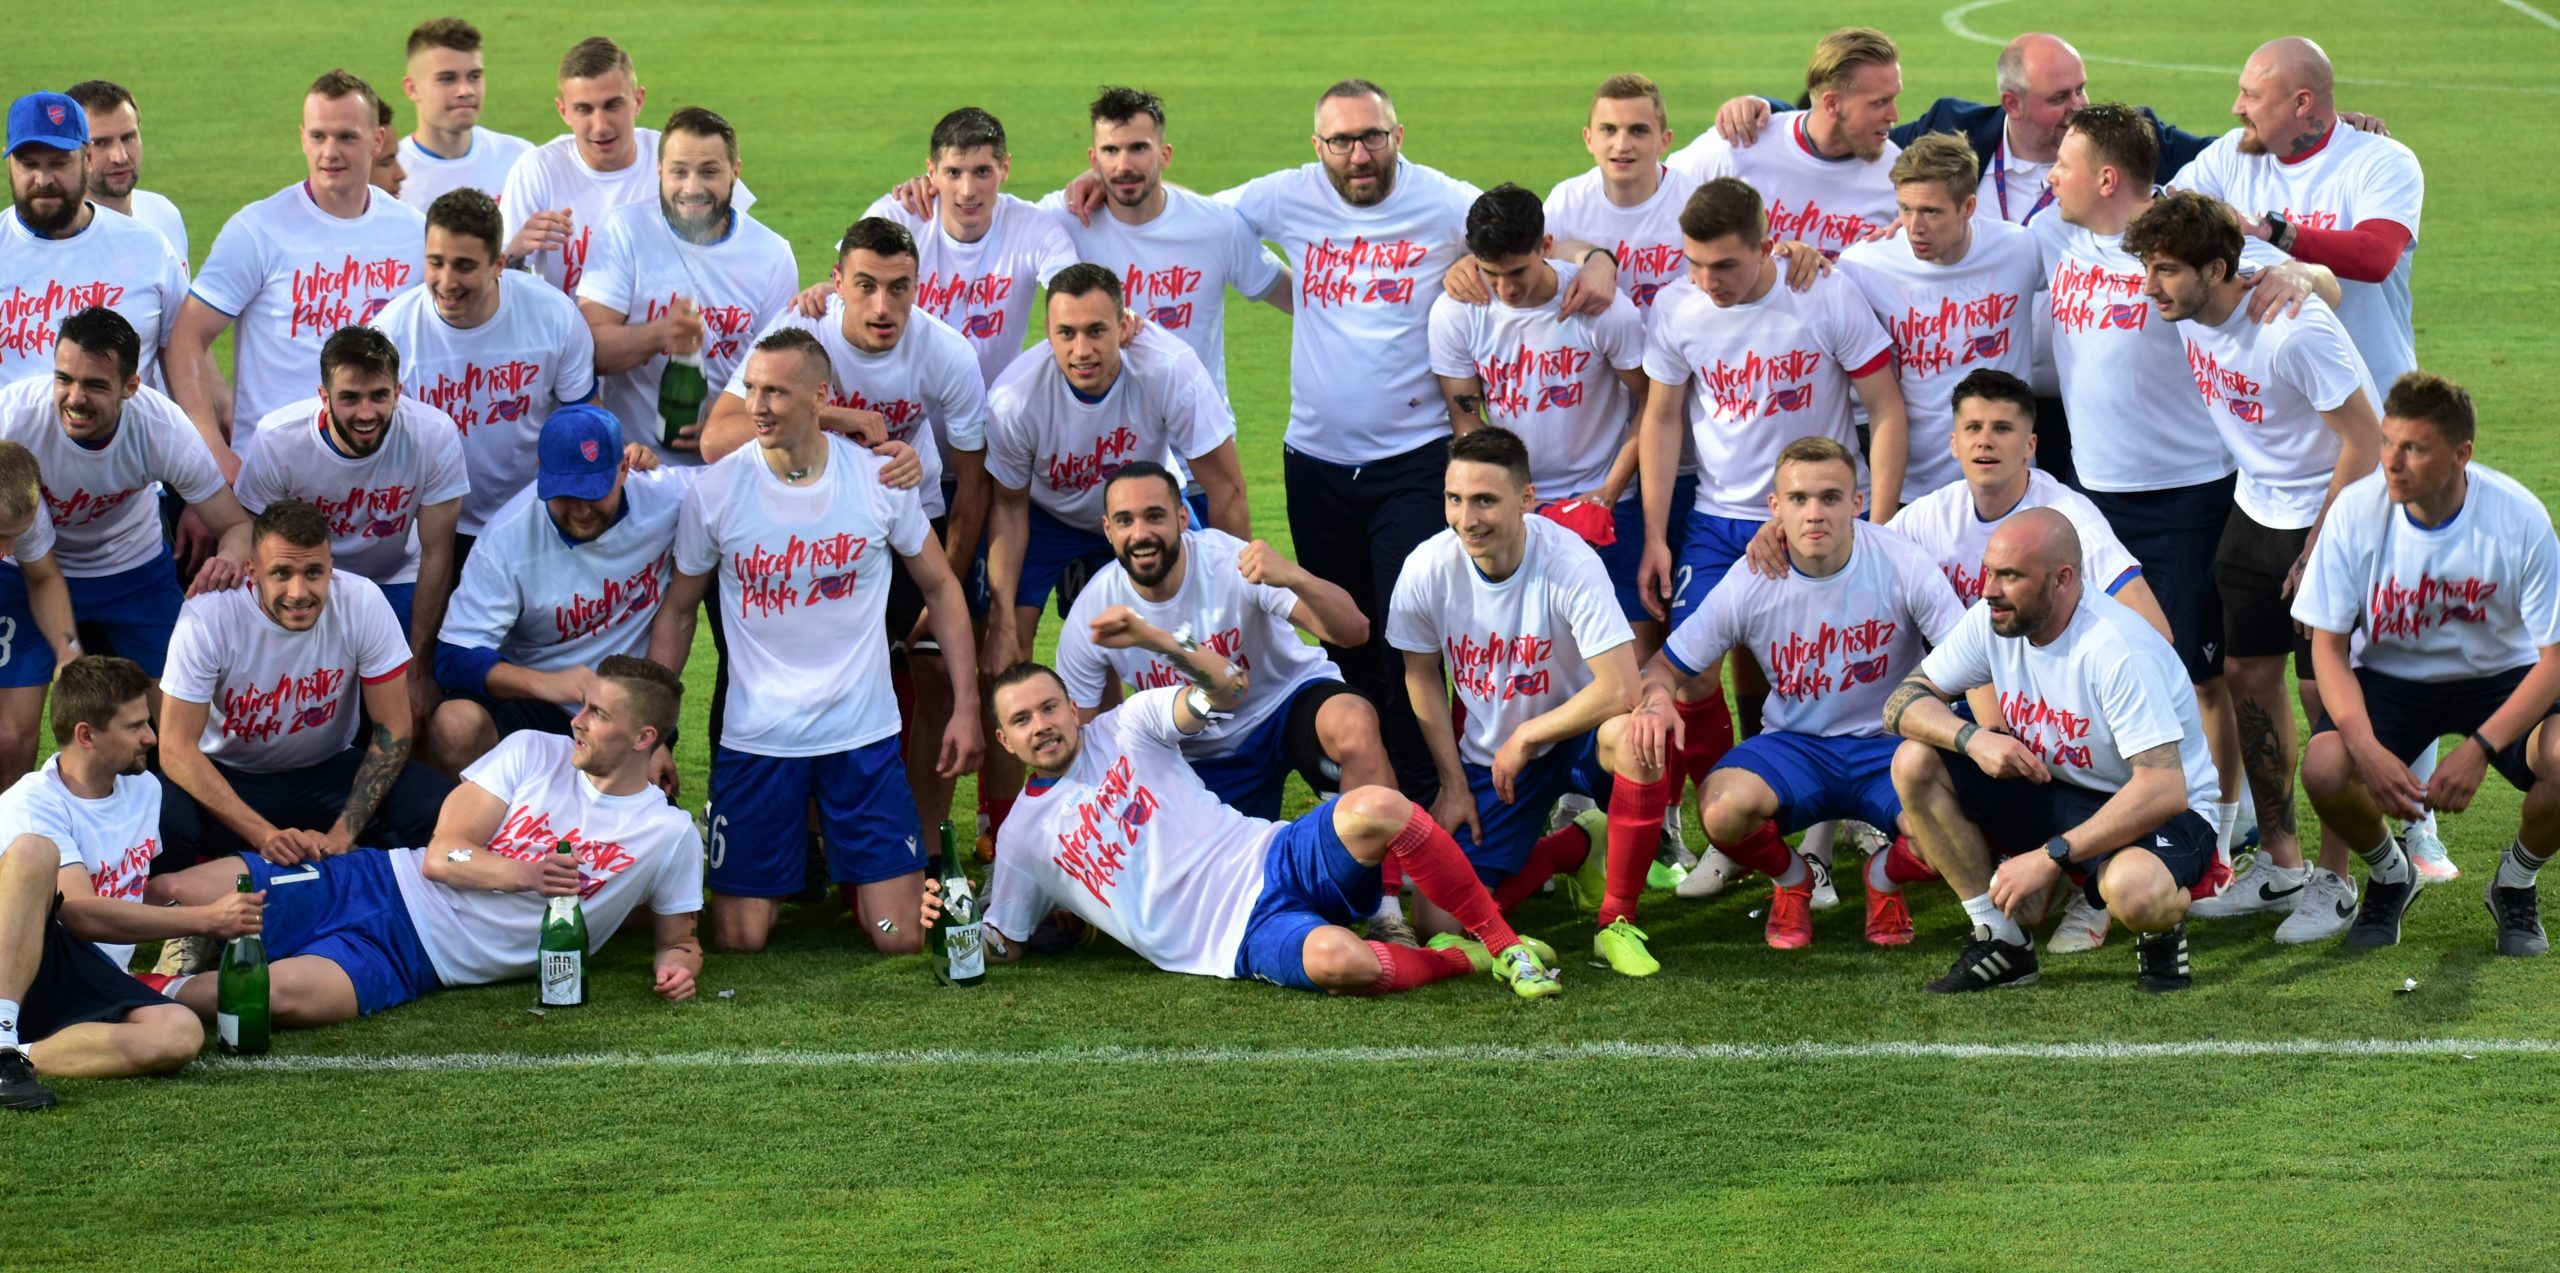 Raków na swoje 100 lat zdobył prawie wszystko! Puchar Polski, wicemistrzostwo Polski i Superpuchar!!! 5